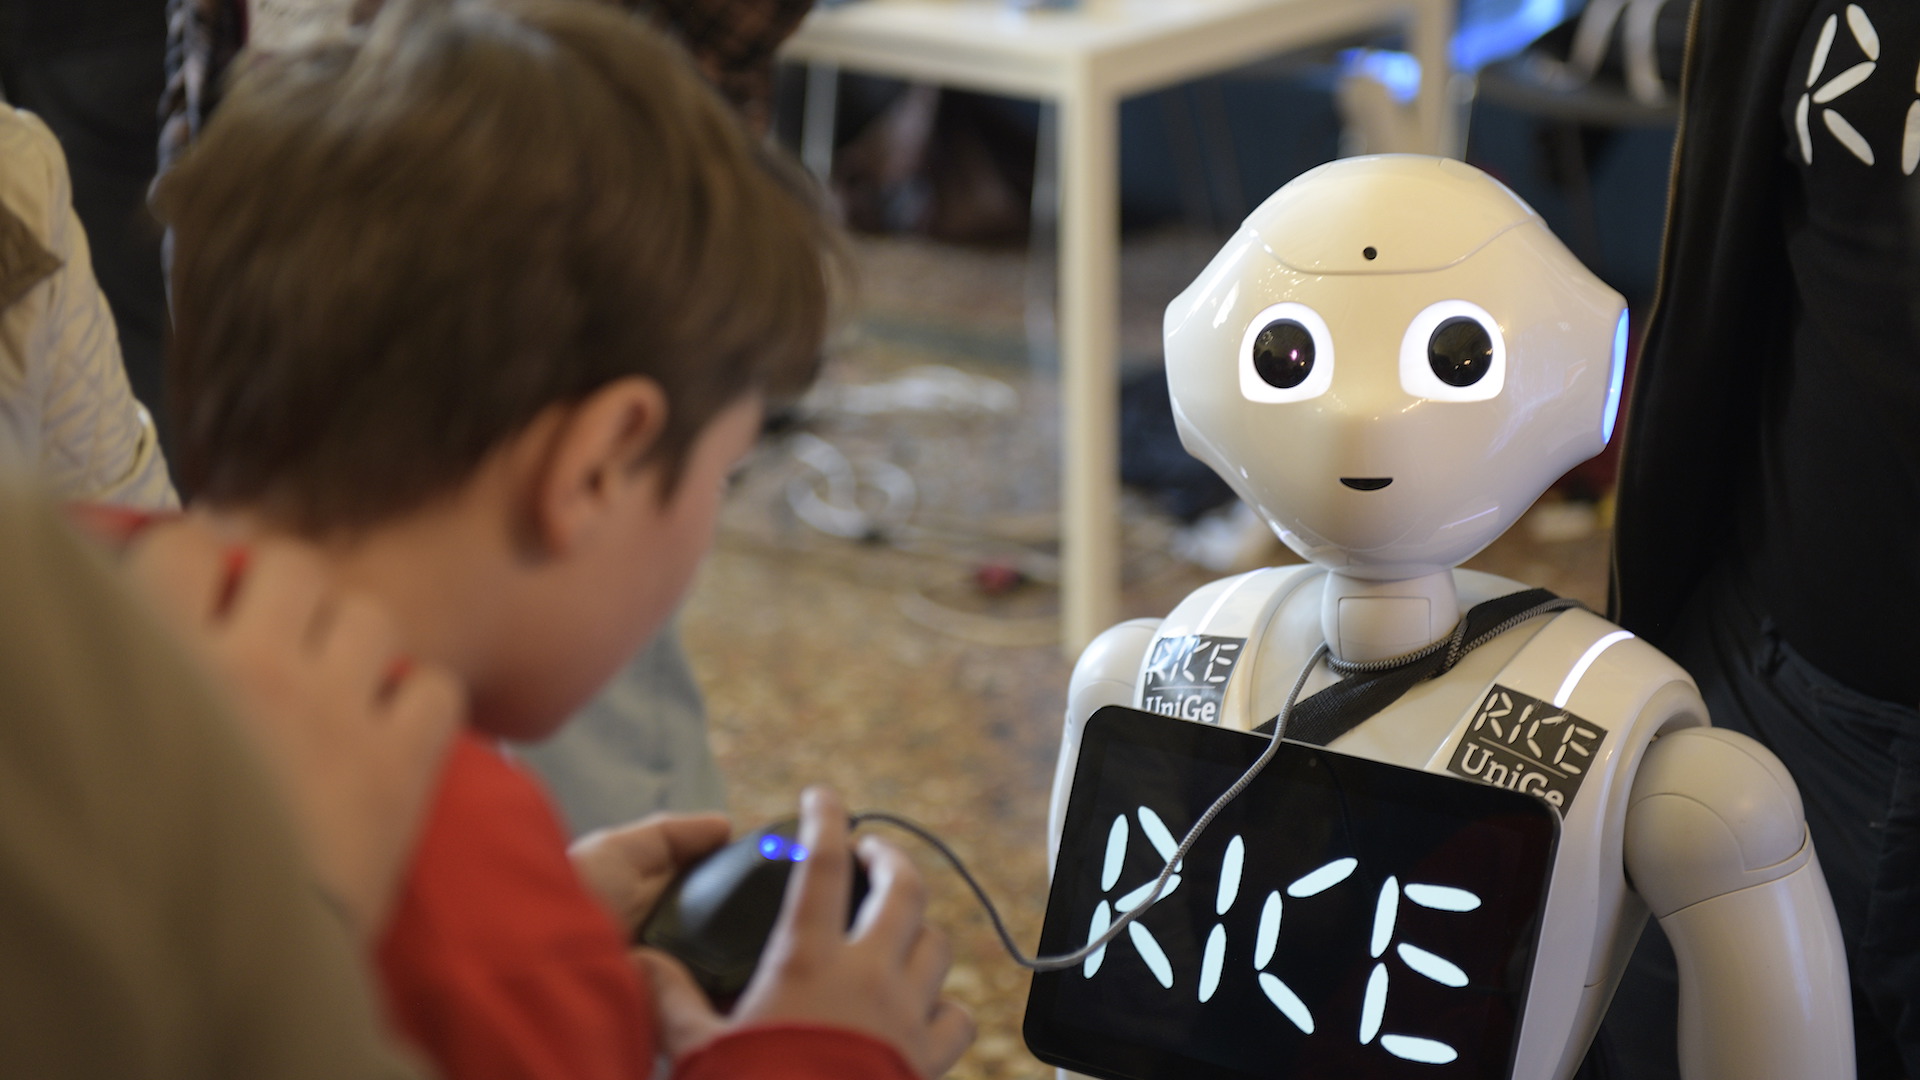 Le demo robotiche a Robot Valley Genova incuriosiscono 1400 persone